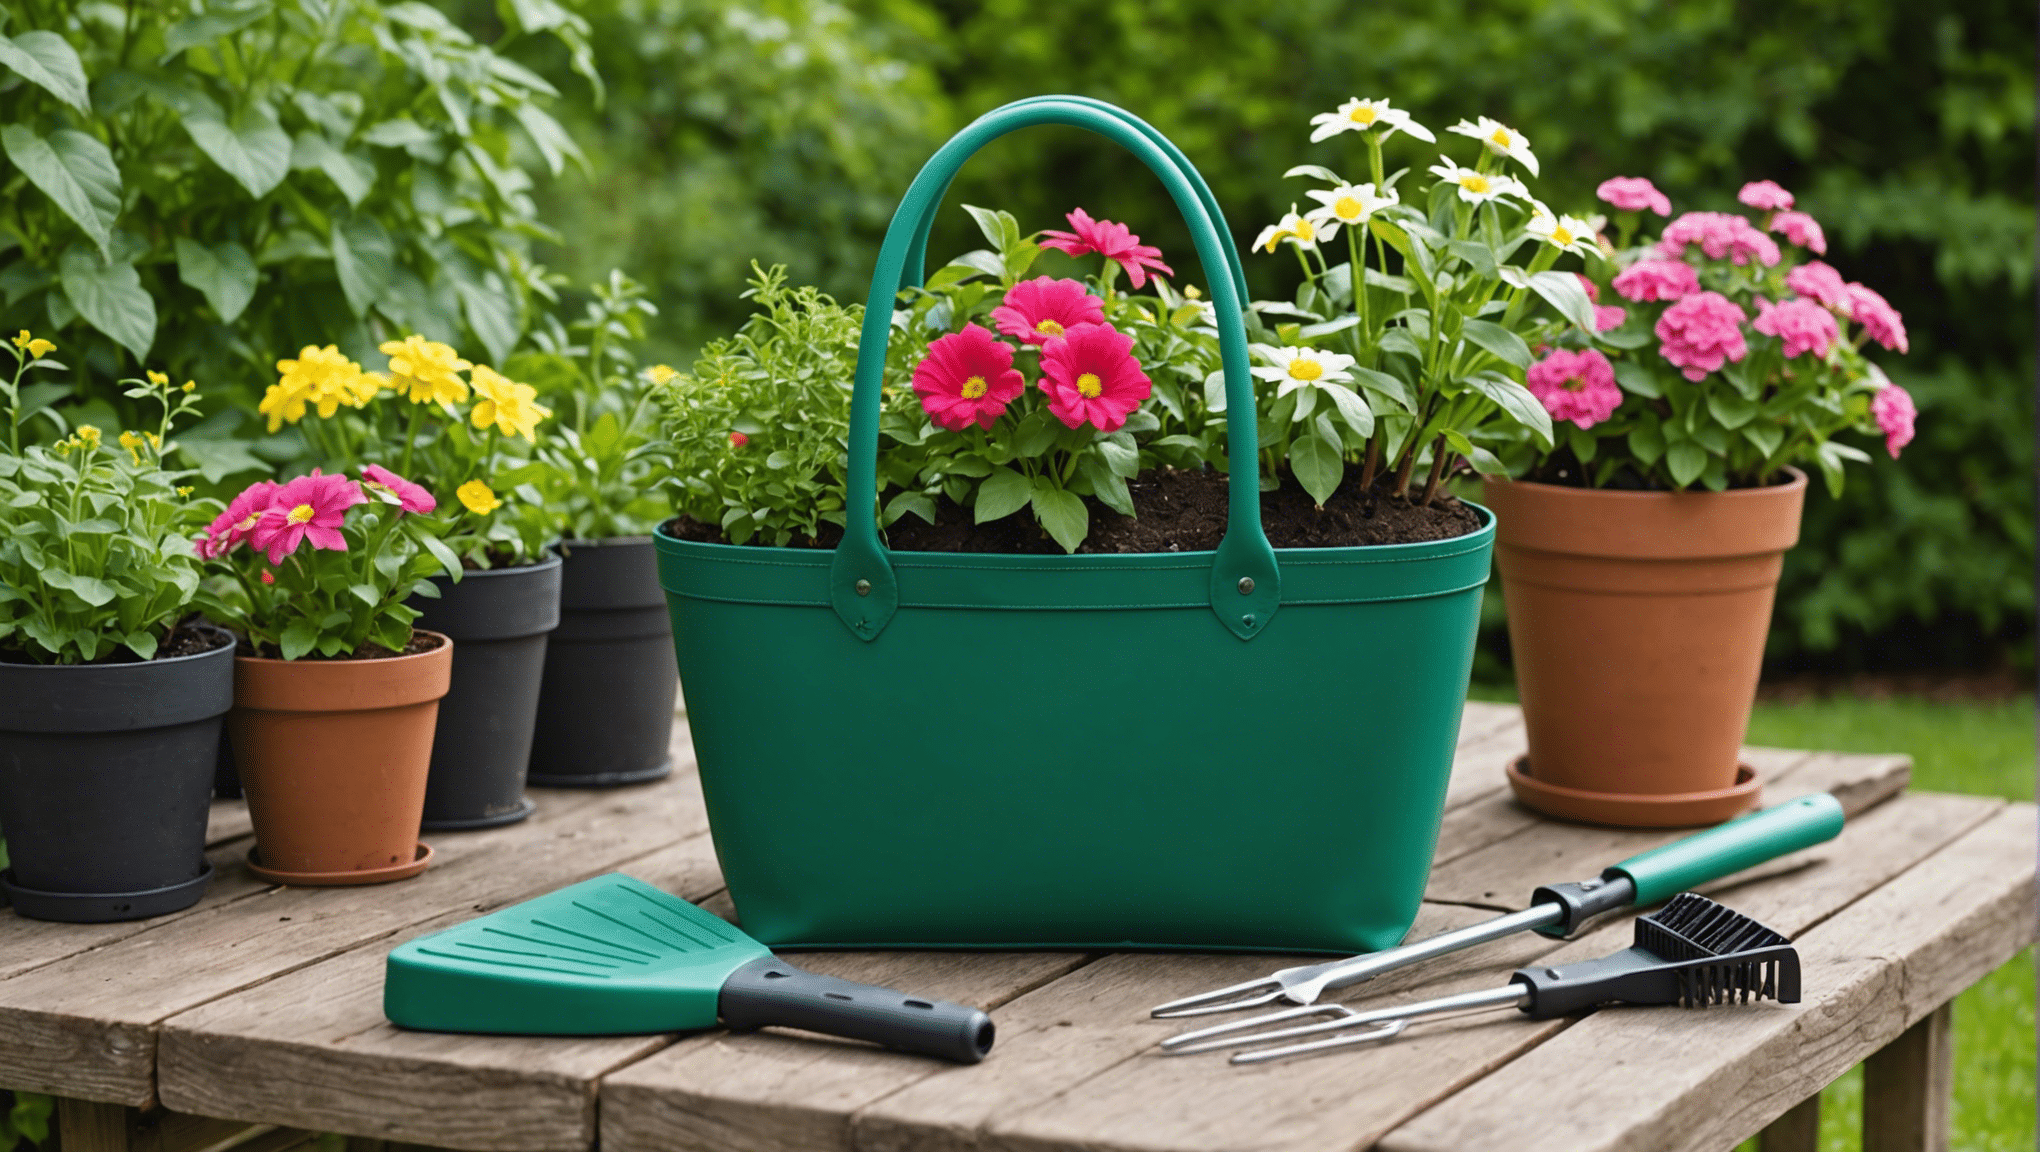 spoznajte funkcije, ki jih mora imeti vrtna torba, in poiščite popolno za svoje vrtnarske potrebe. odkrijte vzdržljive materiale, dovolj prostora za shranjevanje in priročno obliko za čudovito vrtnarsko izkušnjo.